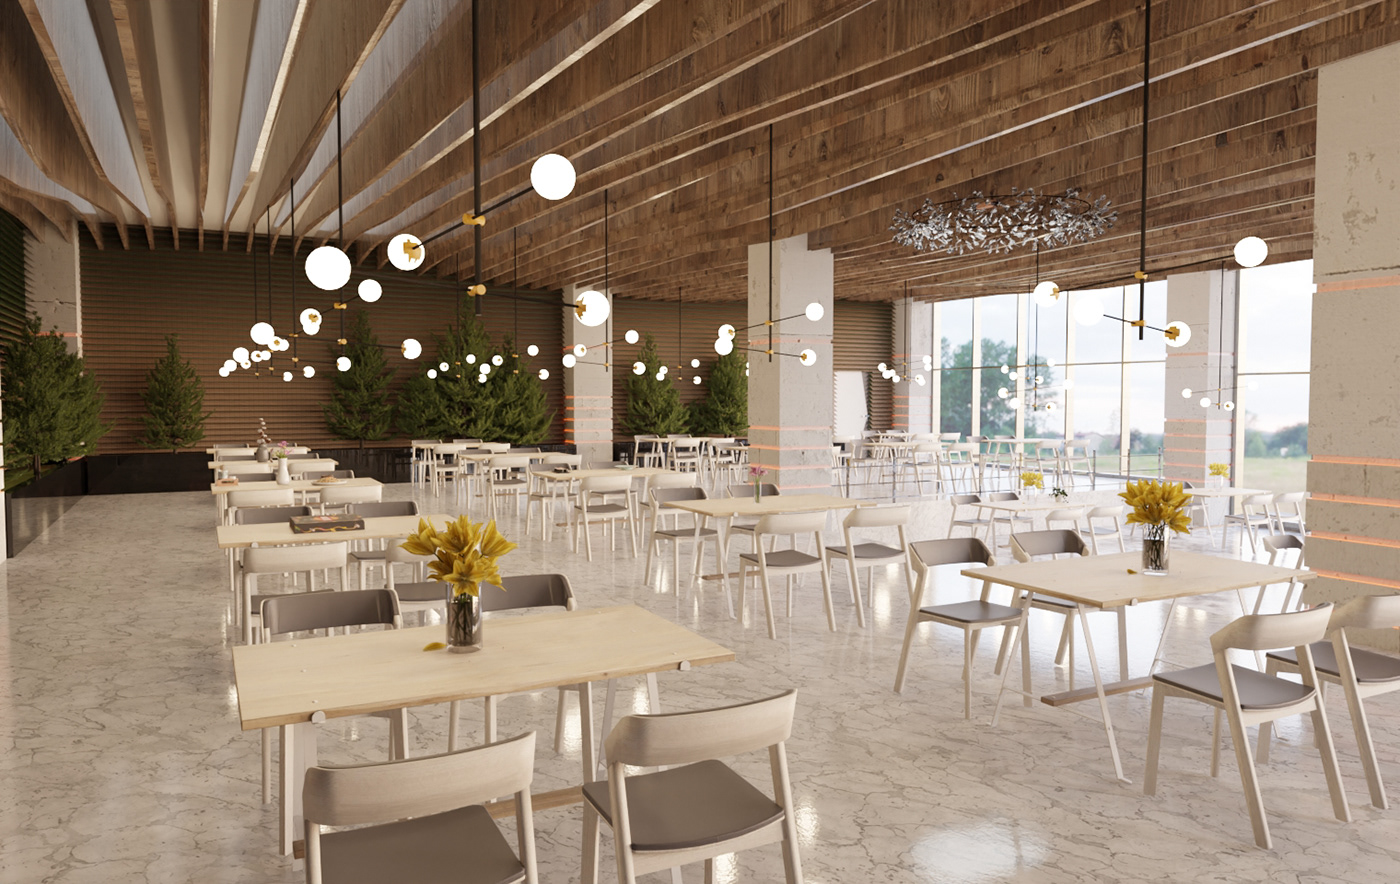 3D architecture archviz blender CGI Cycles render interior design  Render restaurant visualization